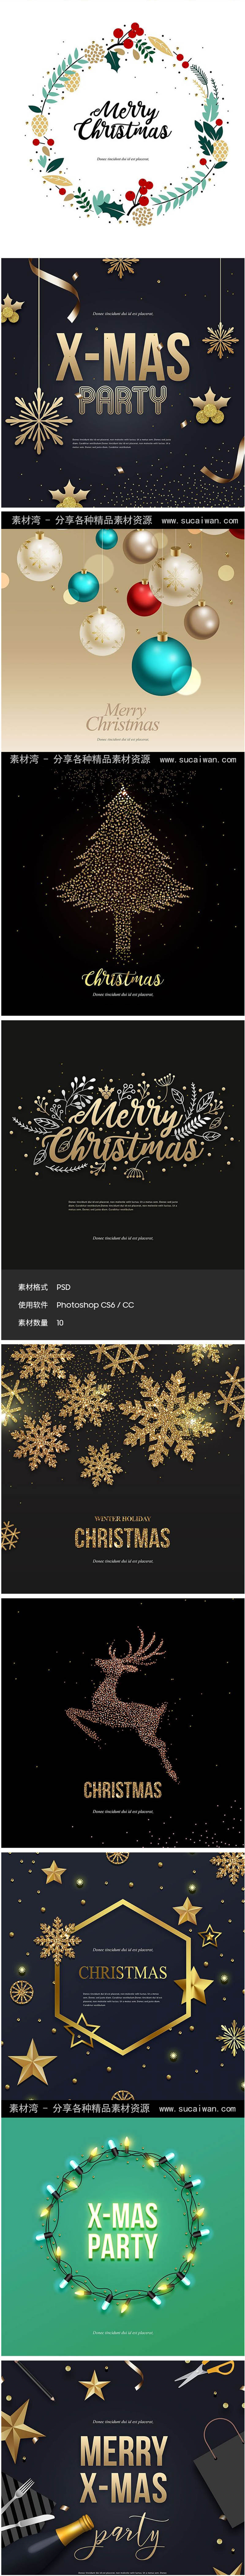 10款黑金色金色圣诞节活动促销圣诞季广告海报背景PSD设计素材模板PS 设计教程 第1张